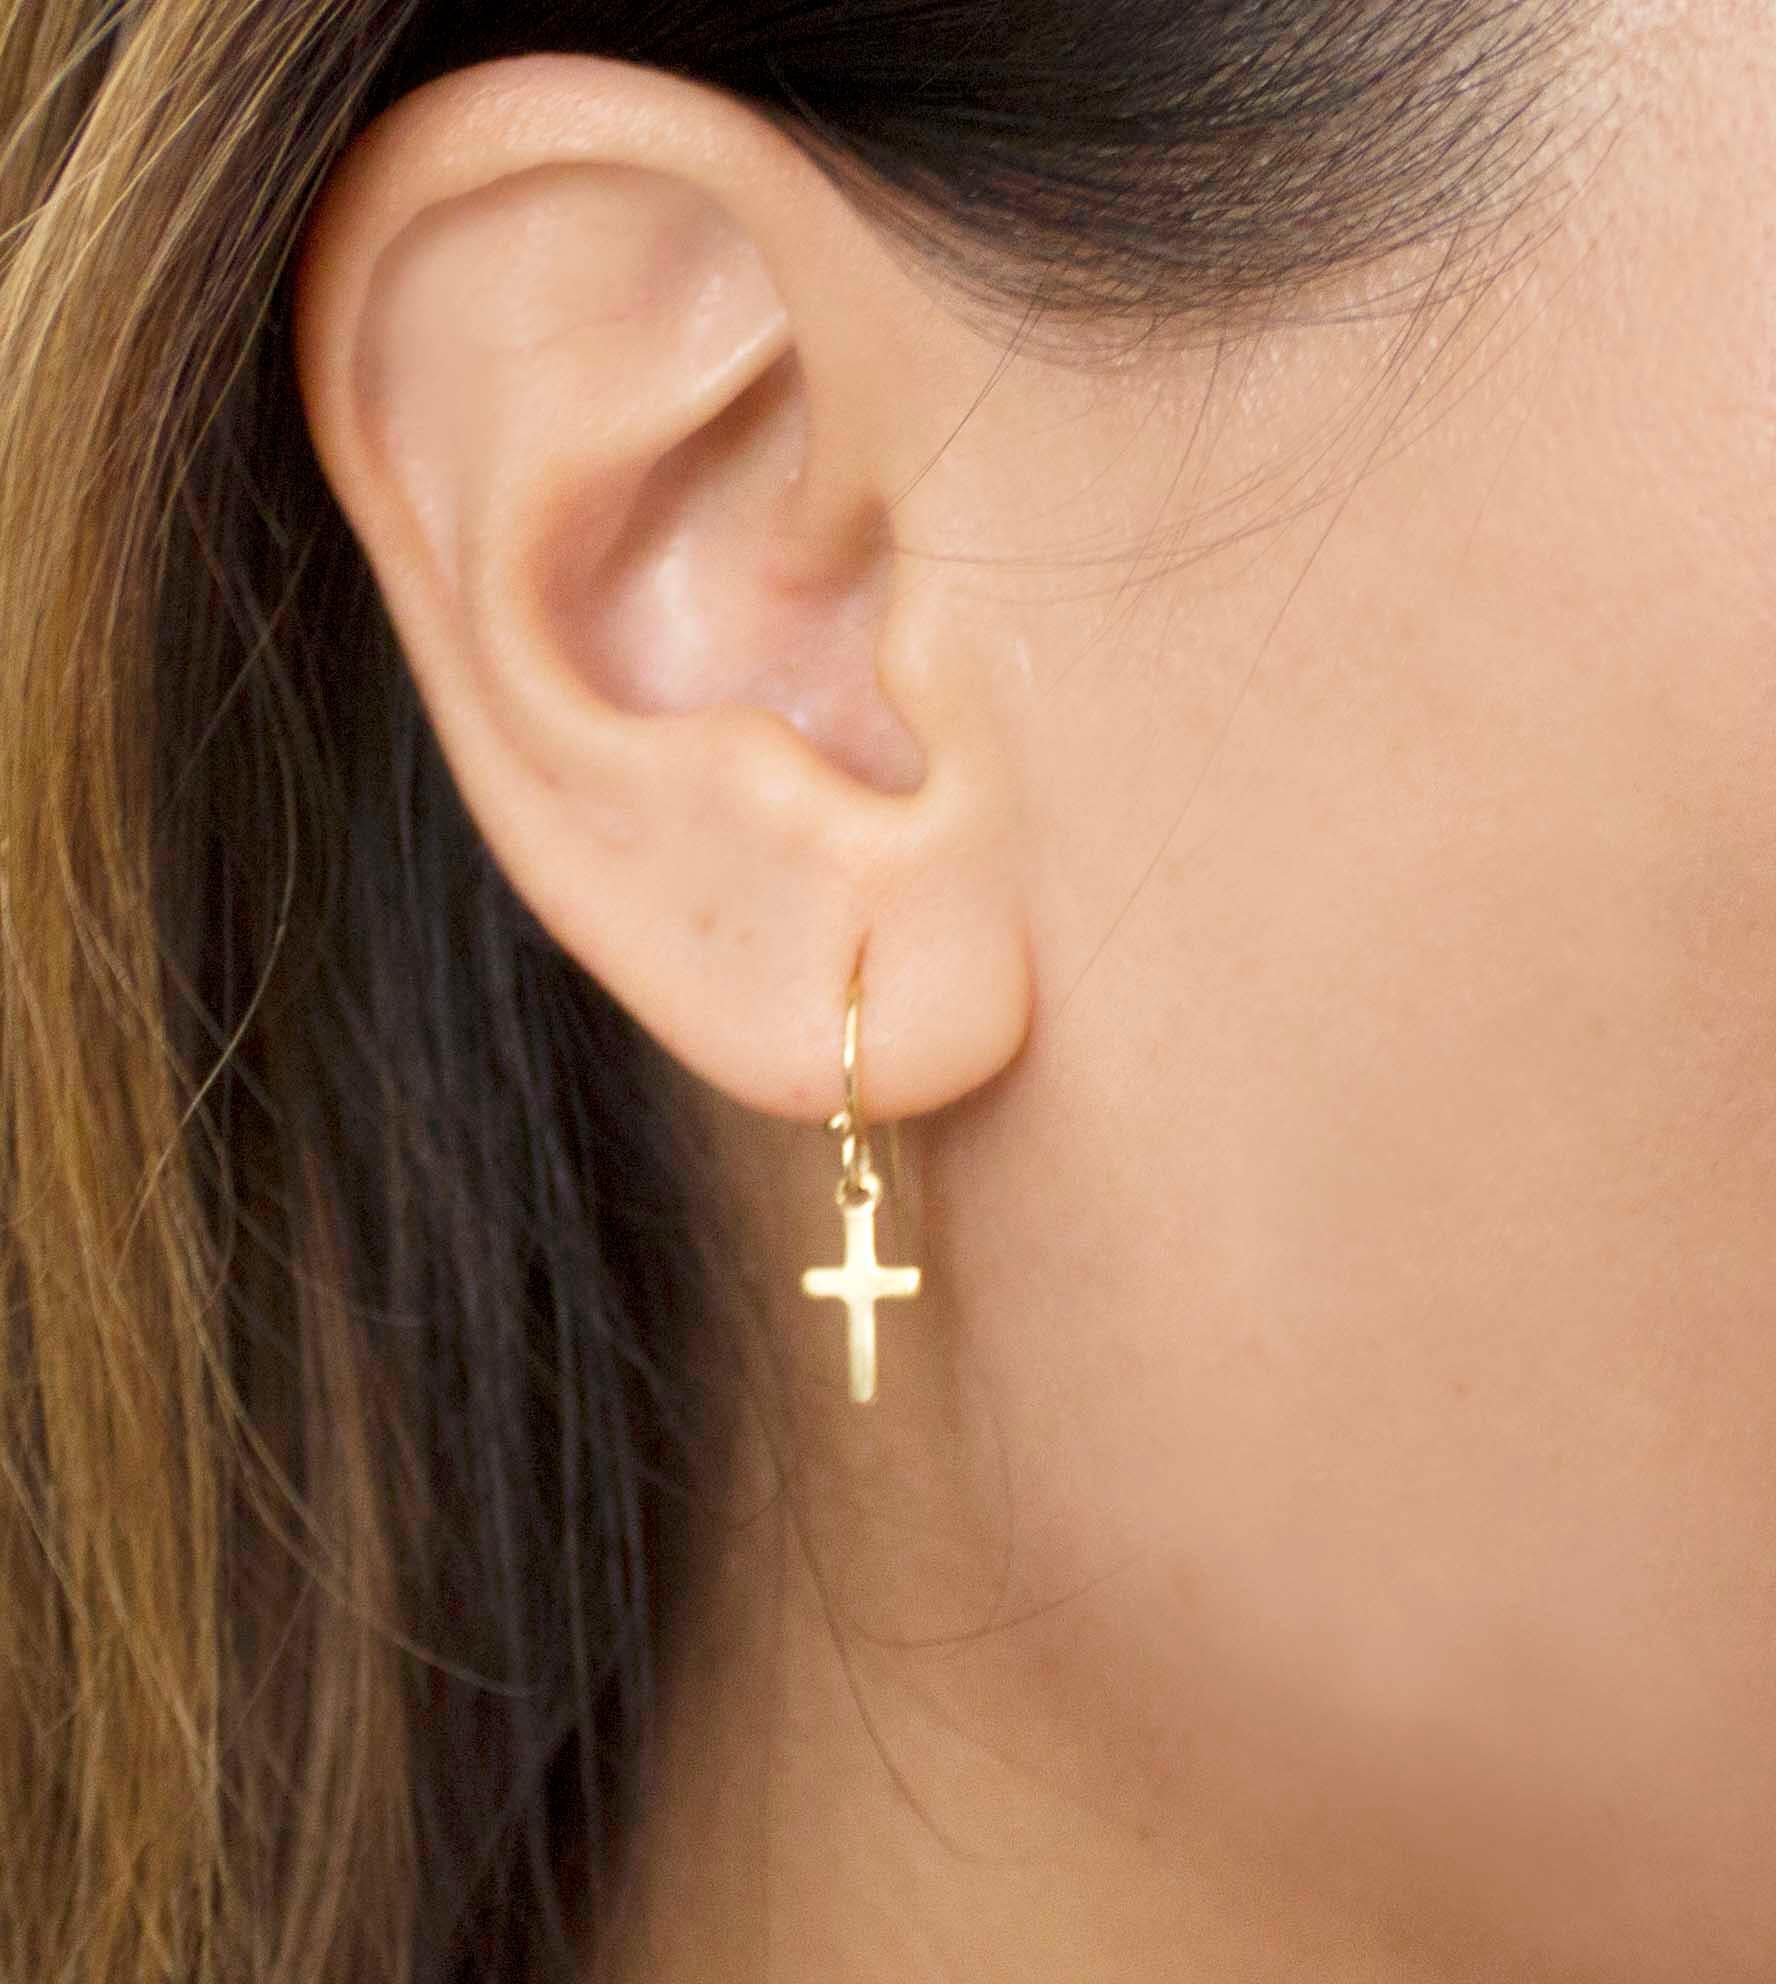 Charm Cross Dangle Solid 10K Yellow Gold Men's Single Earring- 1 PIECE ONLY  | eBay